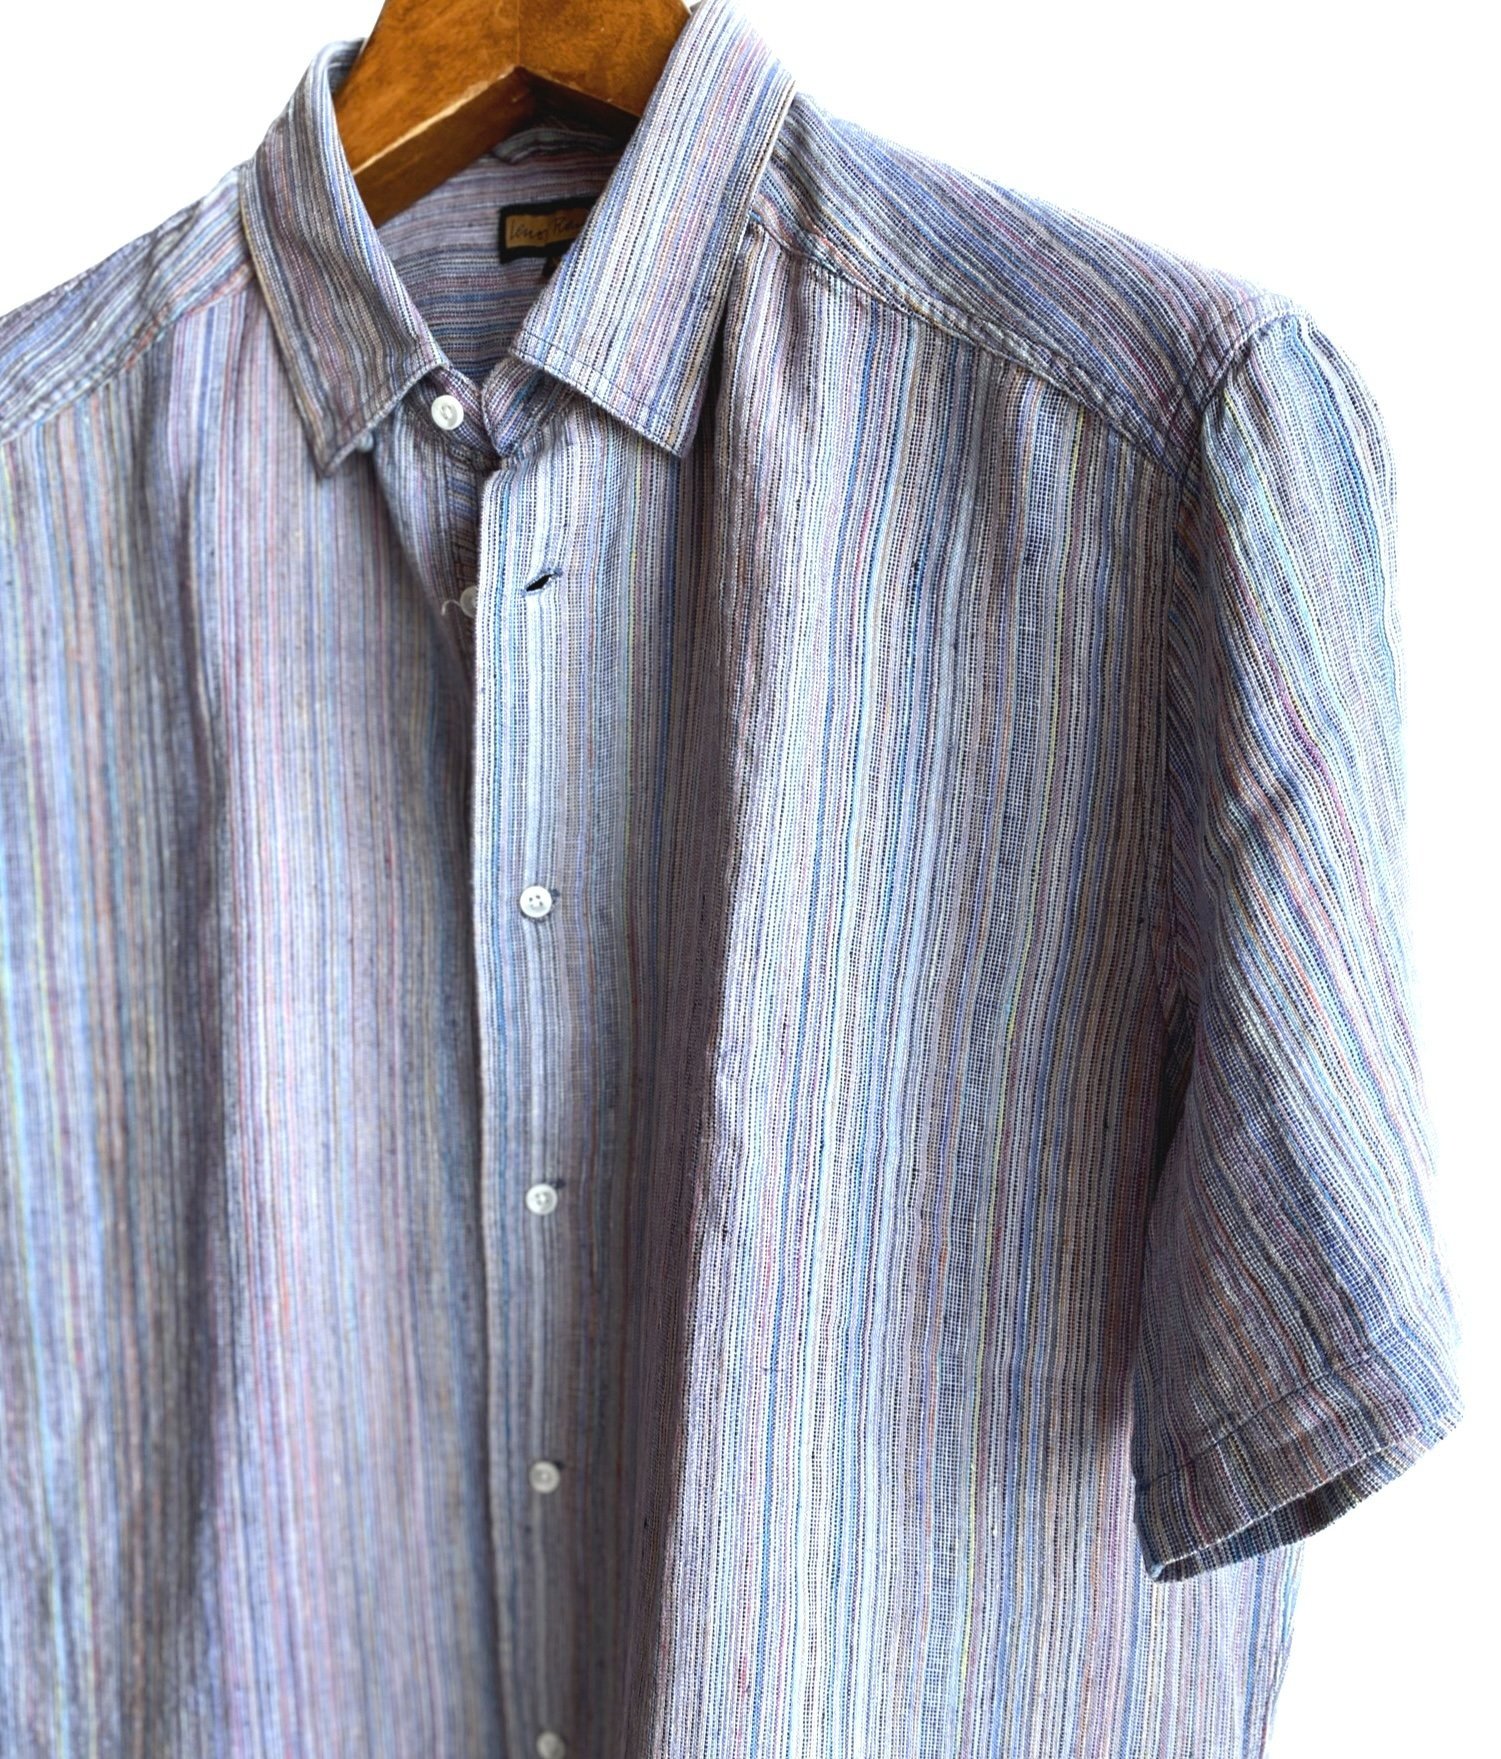 Spring Summer 23 shirts — Designer knitwear apparel online for men by ...